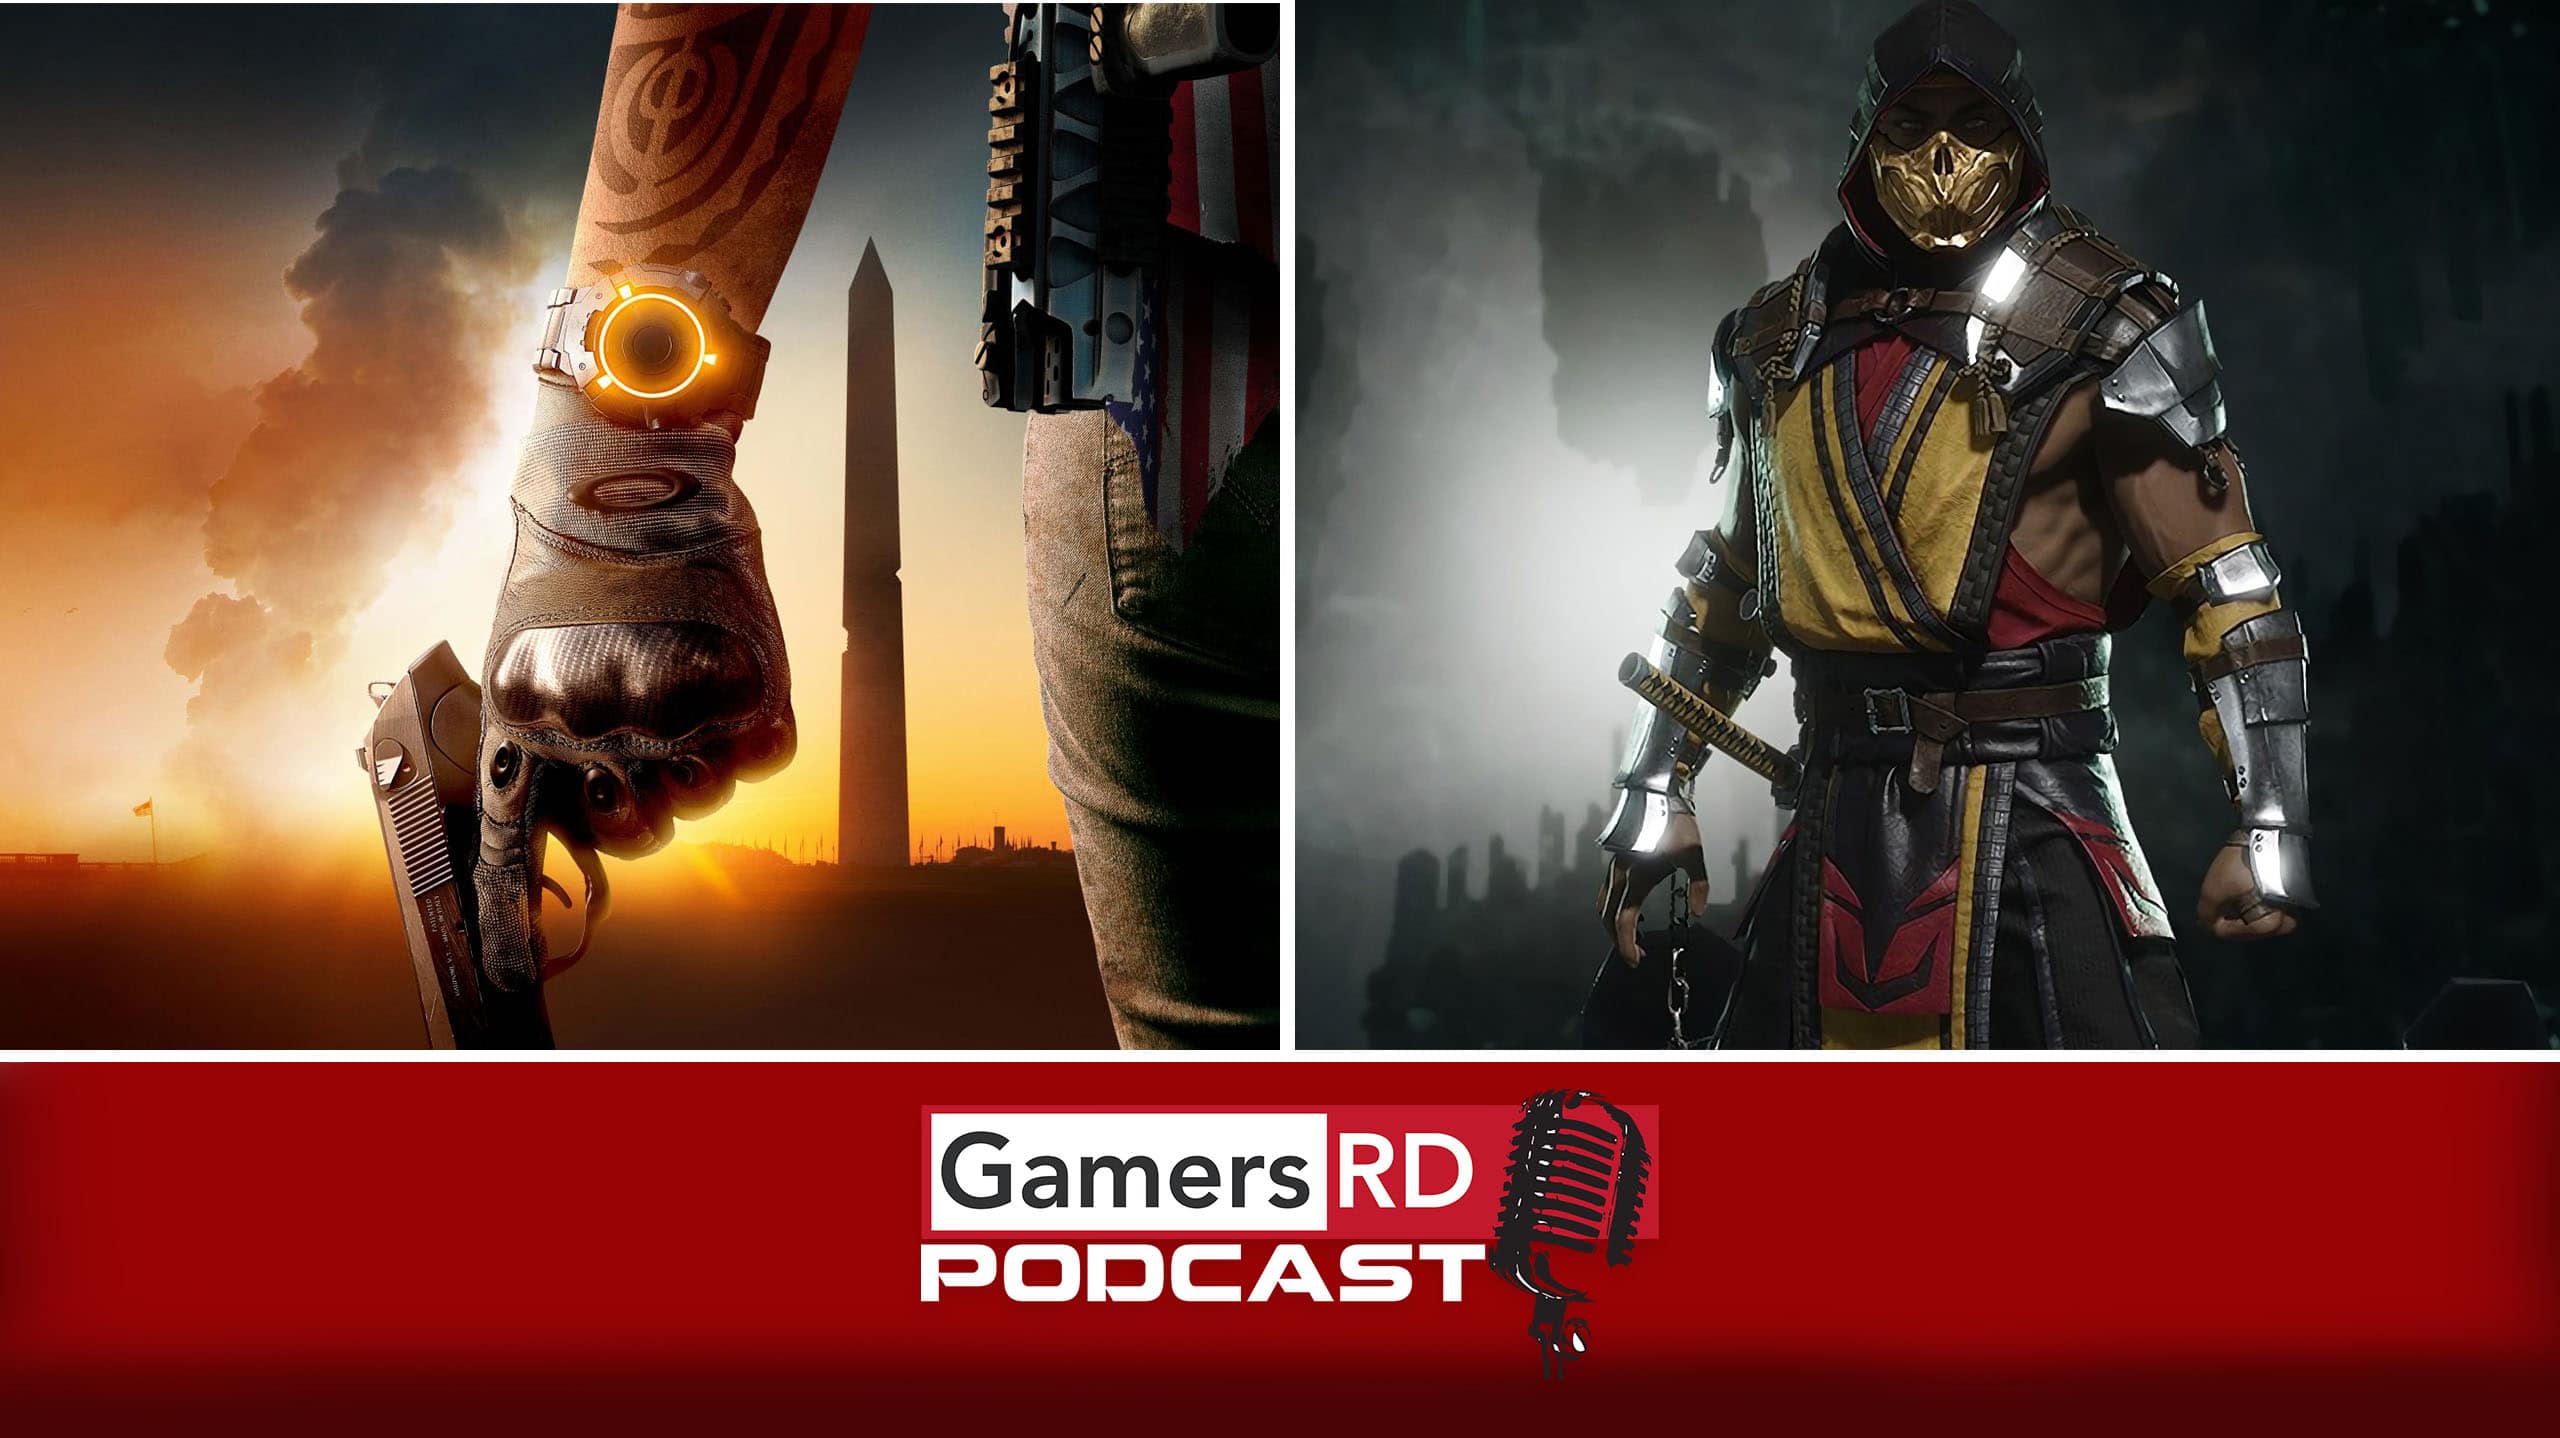 GamersRD Podcast #62, The Division 2, Mortal Kombat 11, Ubisoft, Warner Bros. GamersRD